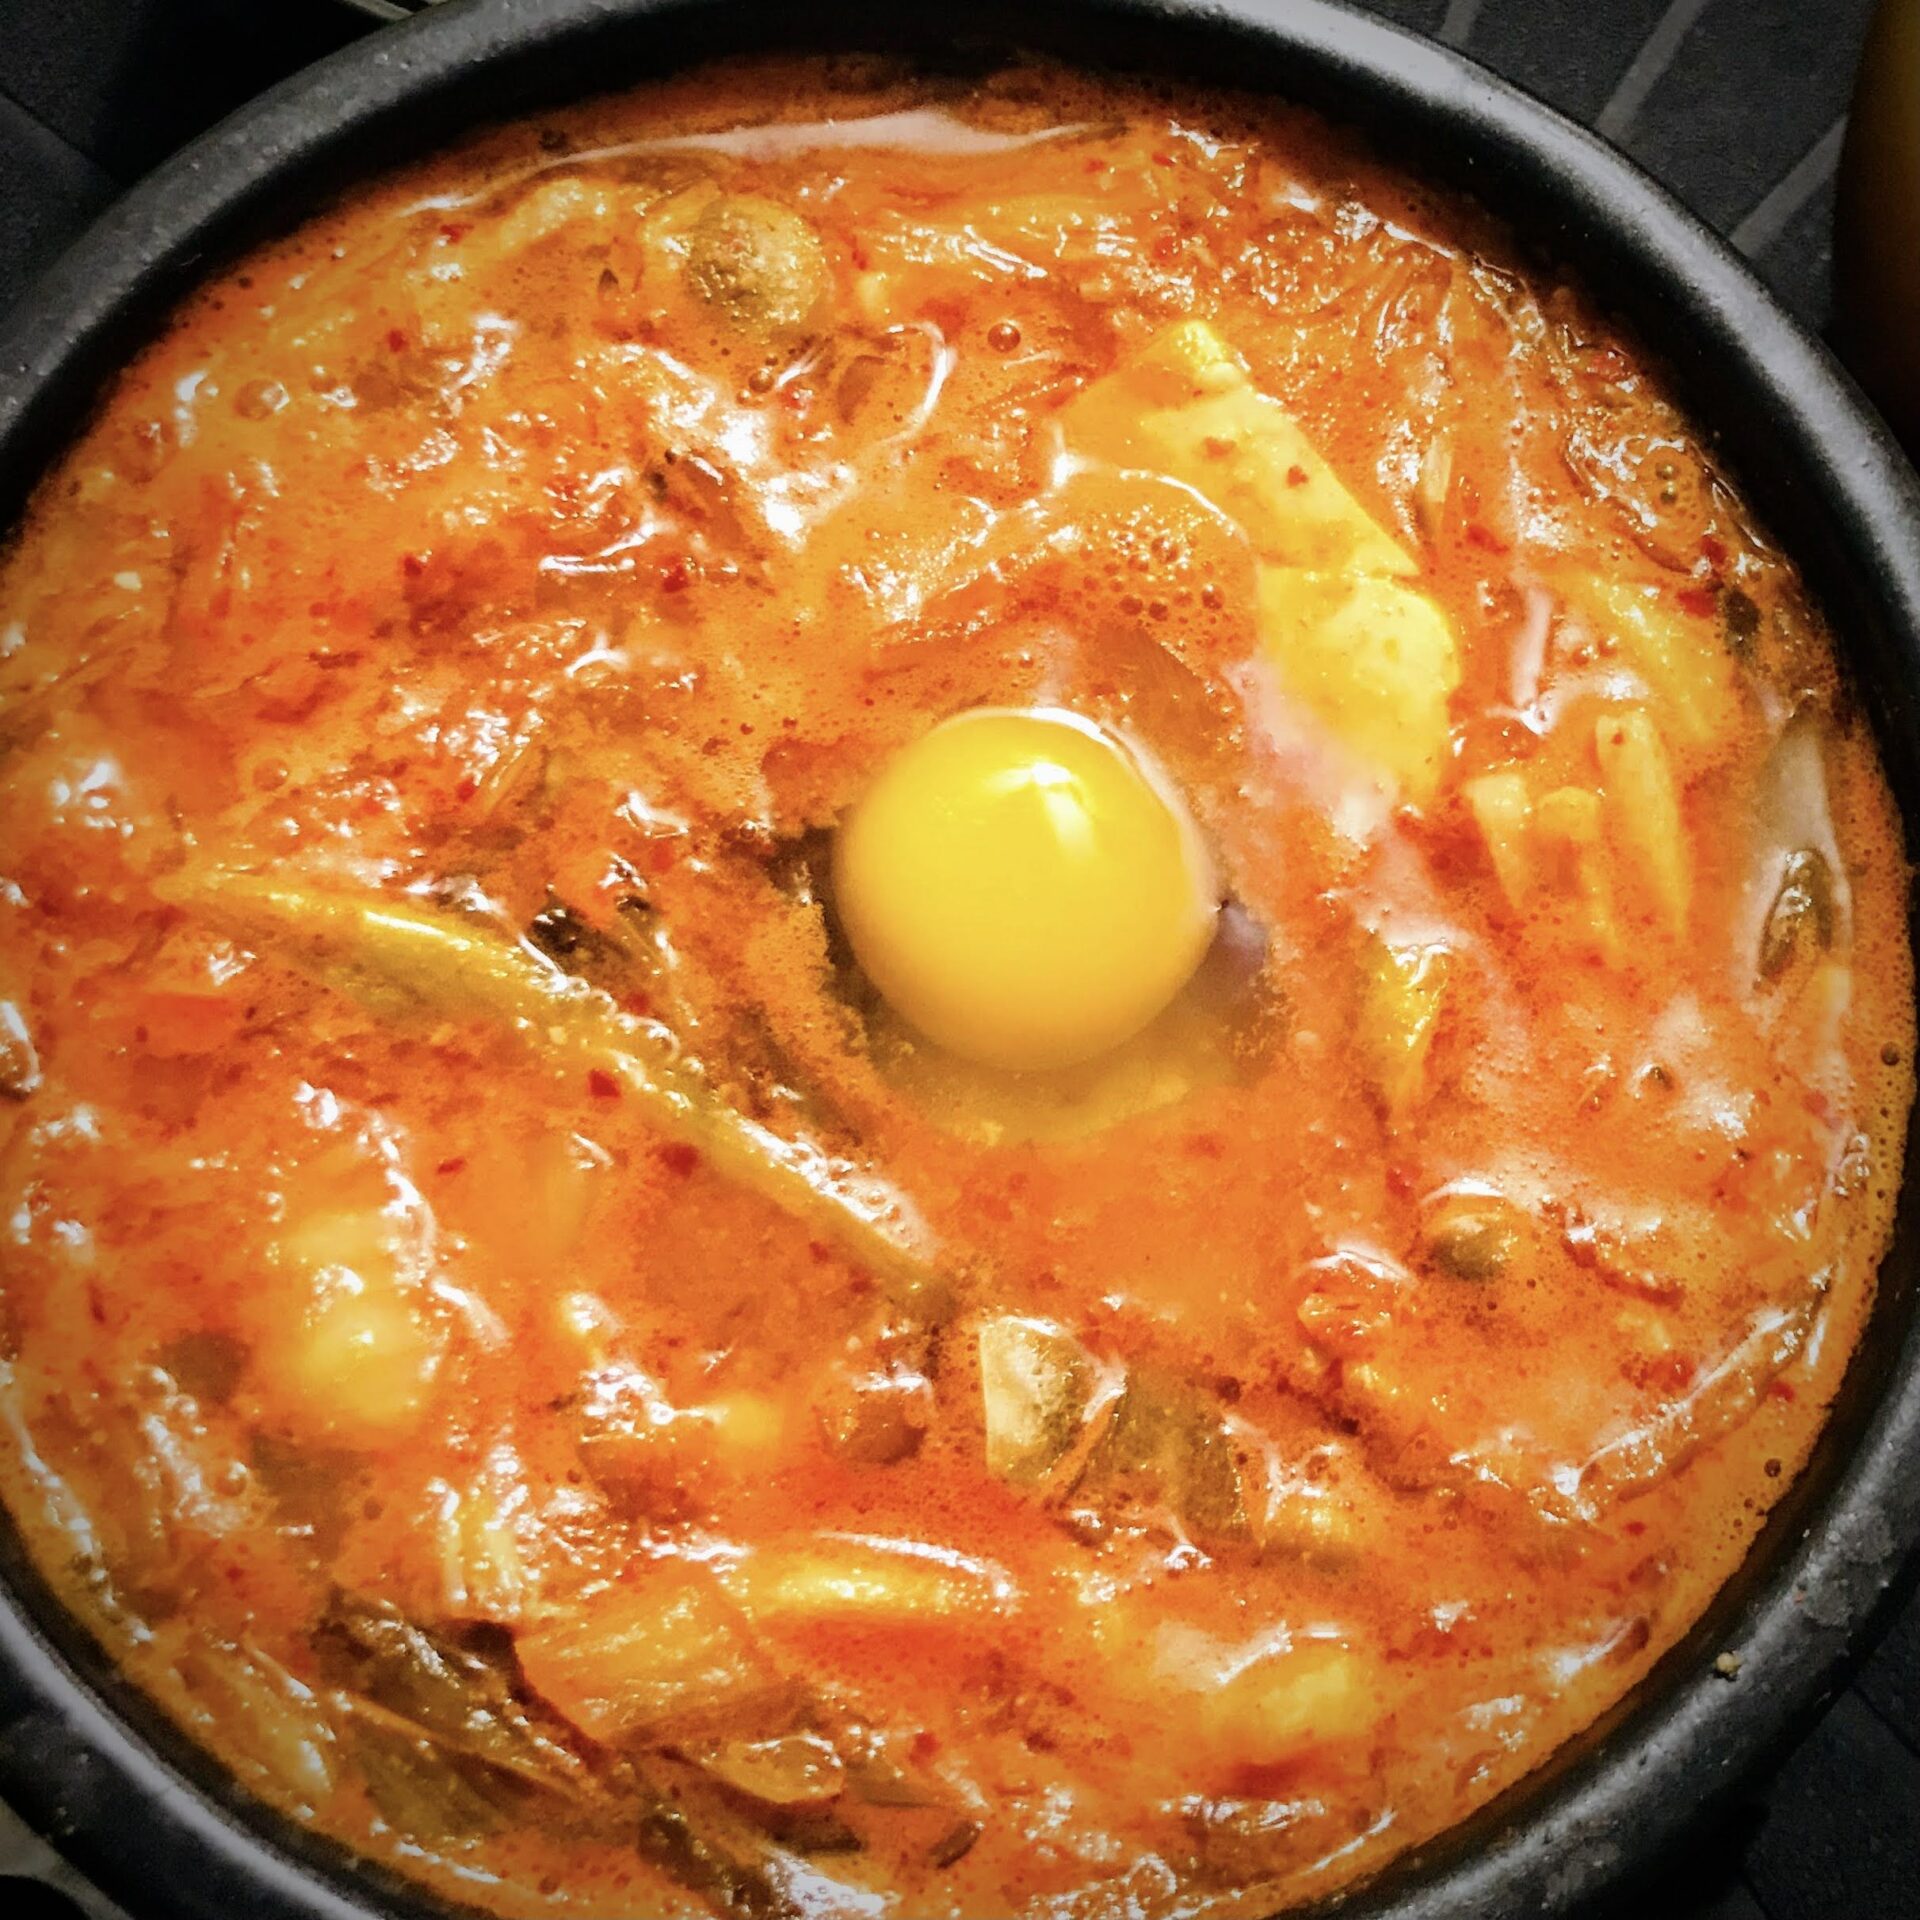 https://www.eatwithohashi.com/wp-content/uploads/2021/04/sundubu-jjigae-korean-soup-6.jpg